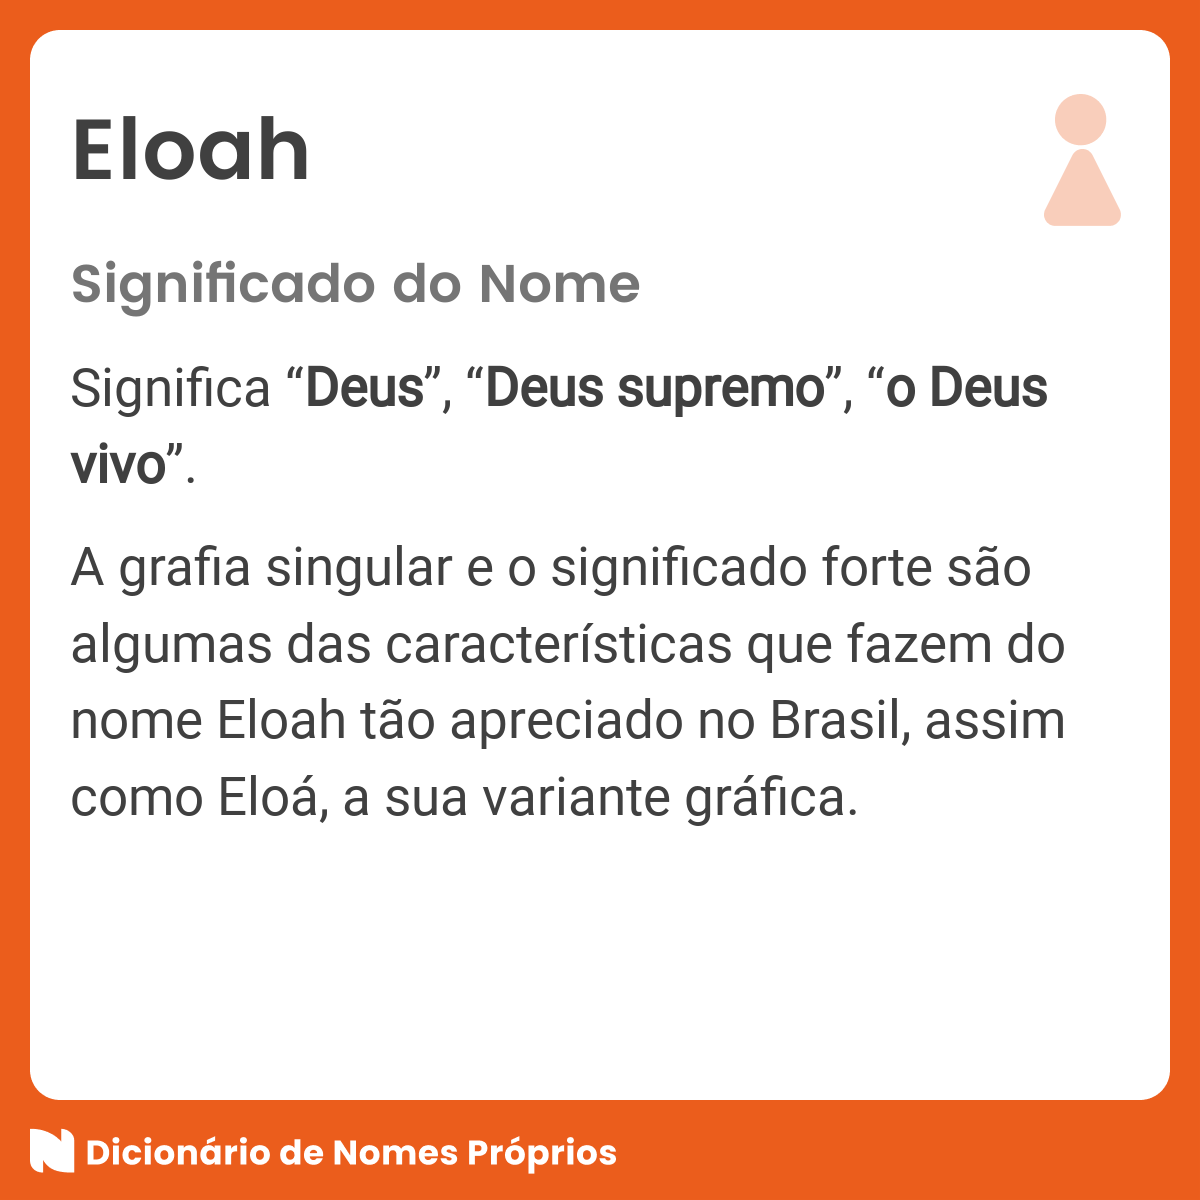 Significado do nome Eloah